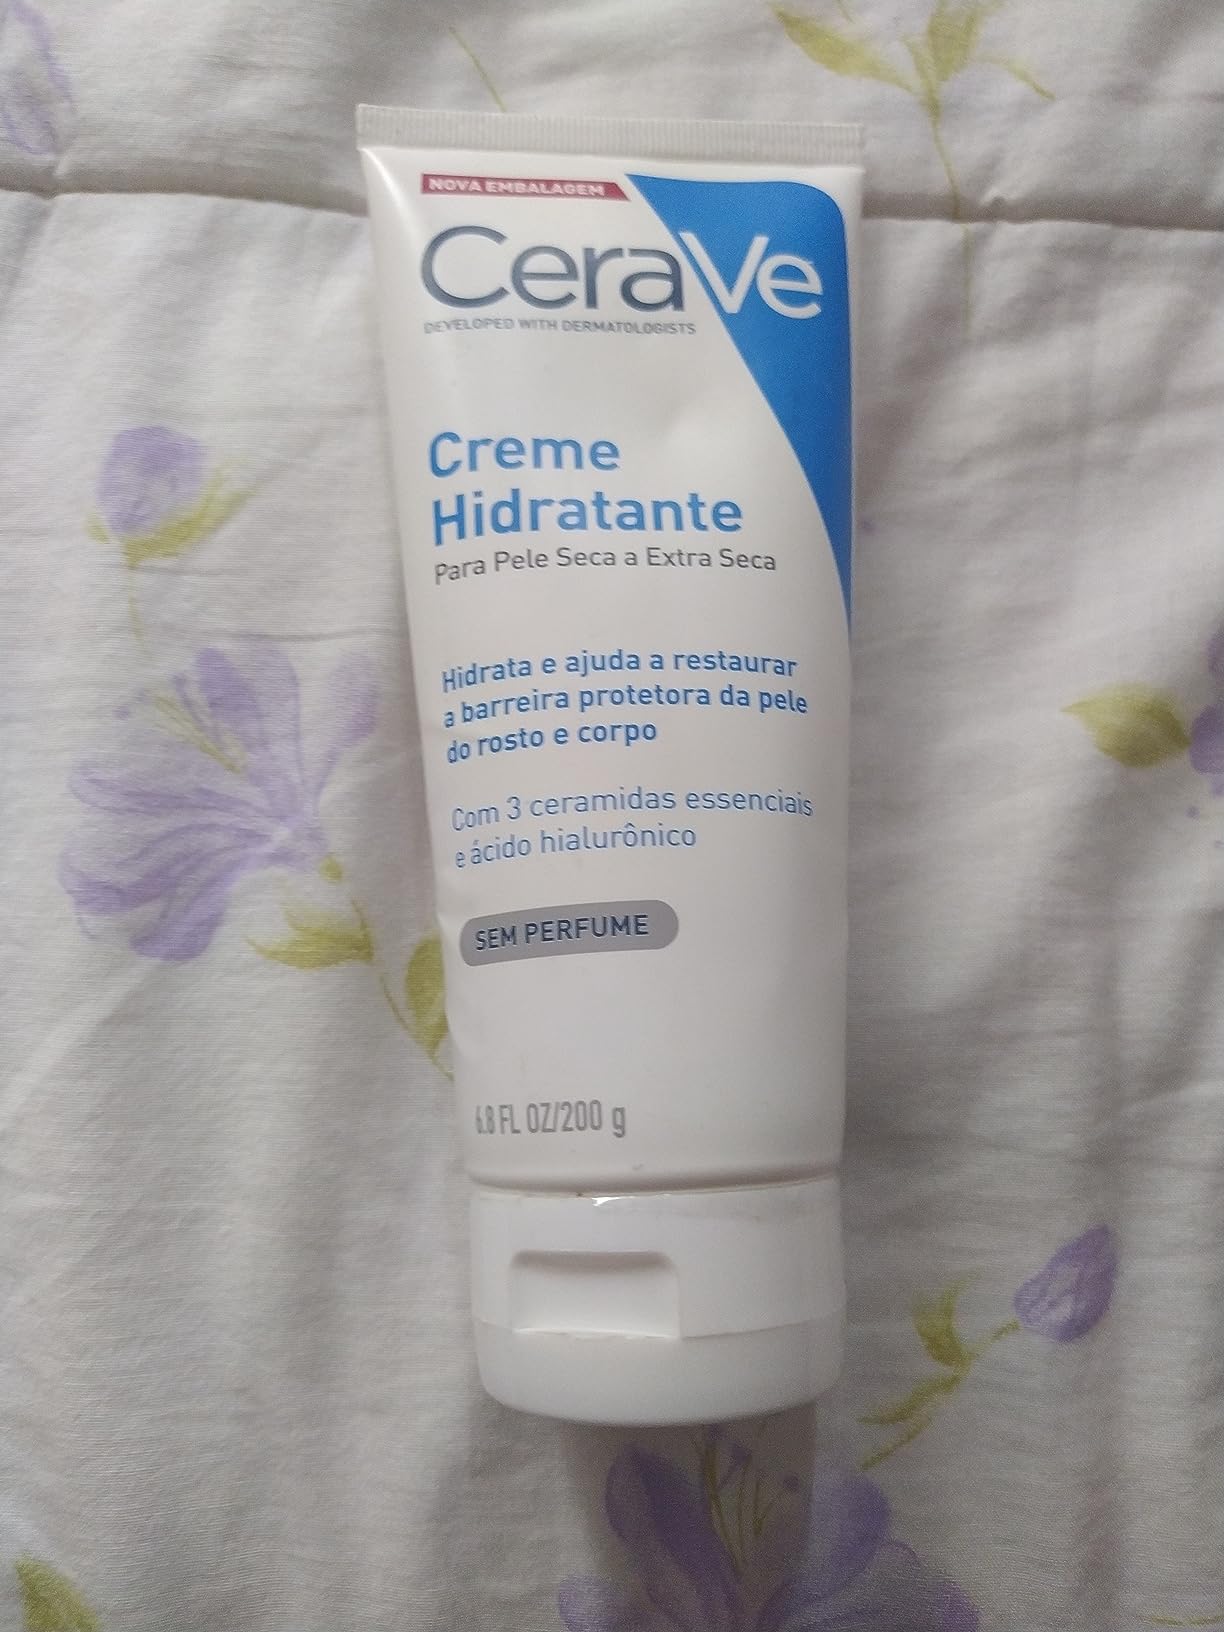 CeraVe Creme Hidratante com Ácido Hialurônico - Imagem do produto que o cliente comprou 3